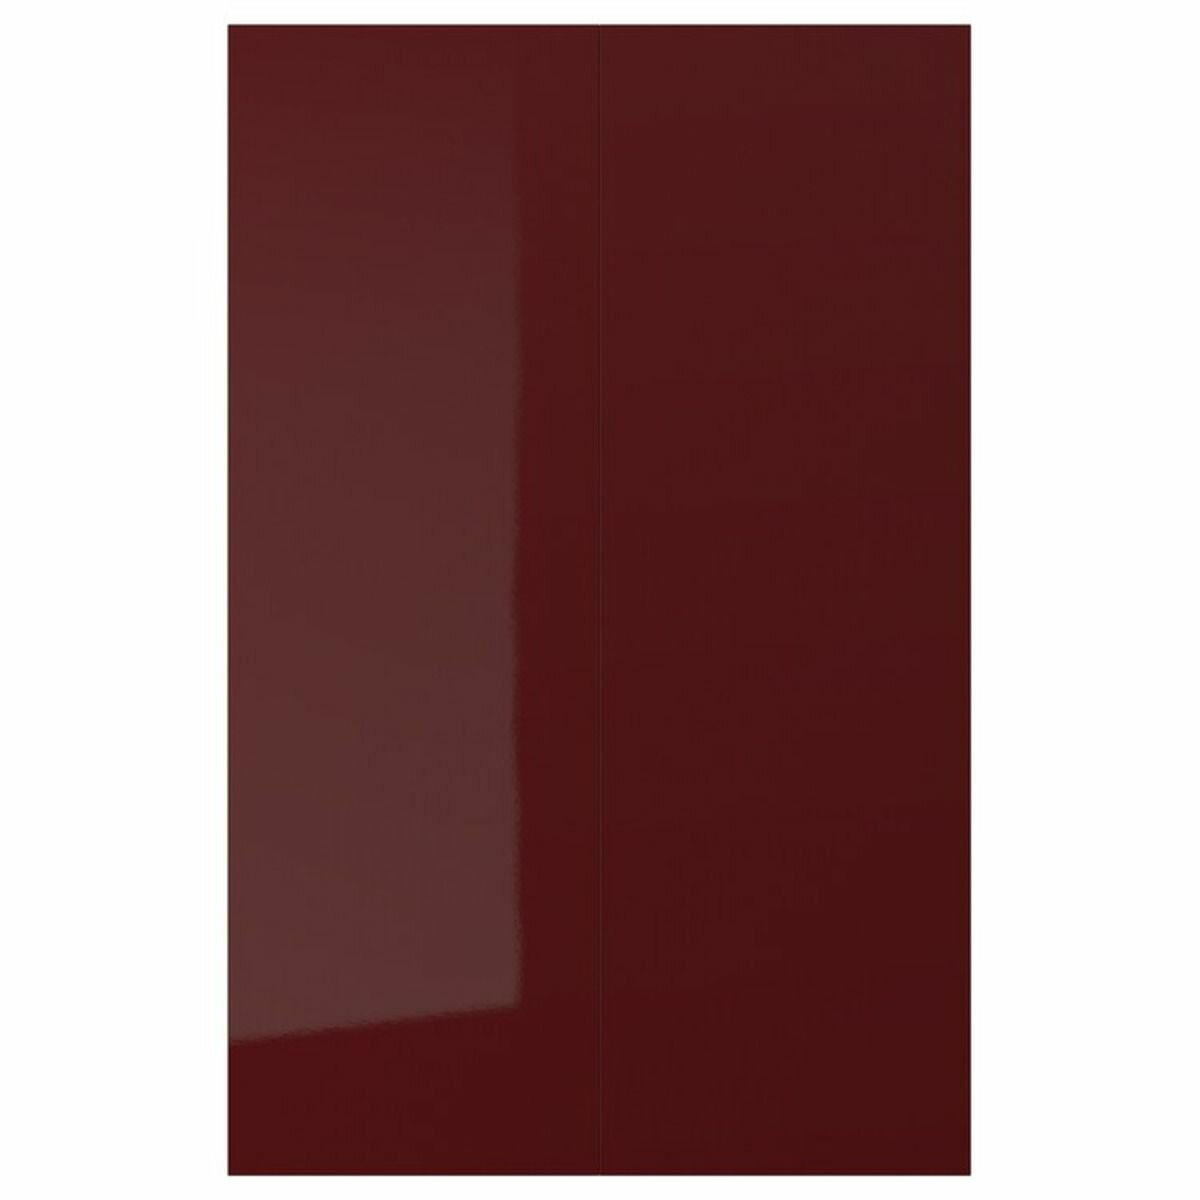 Дверца д/напольн углового шкафа IKEA KALLARP калларп 2шт 25x80 см глянцевый темный красно-коричневый